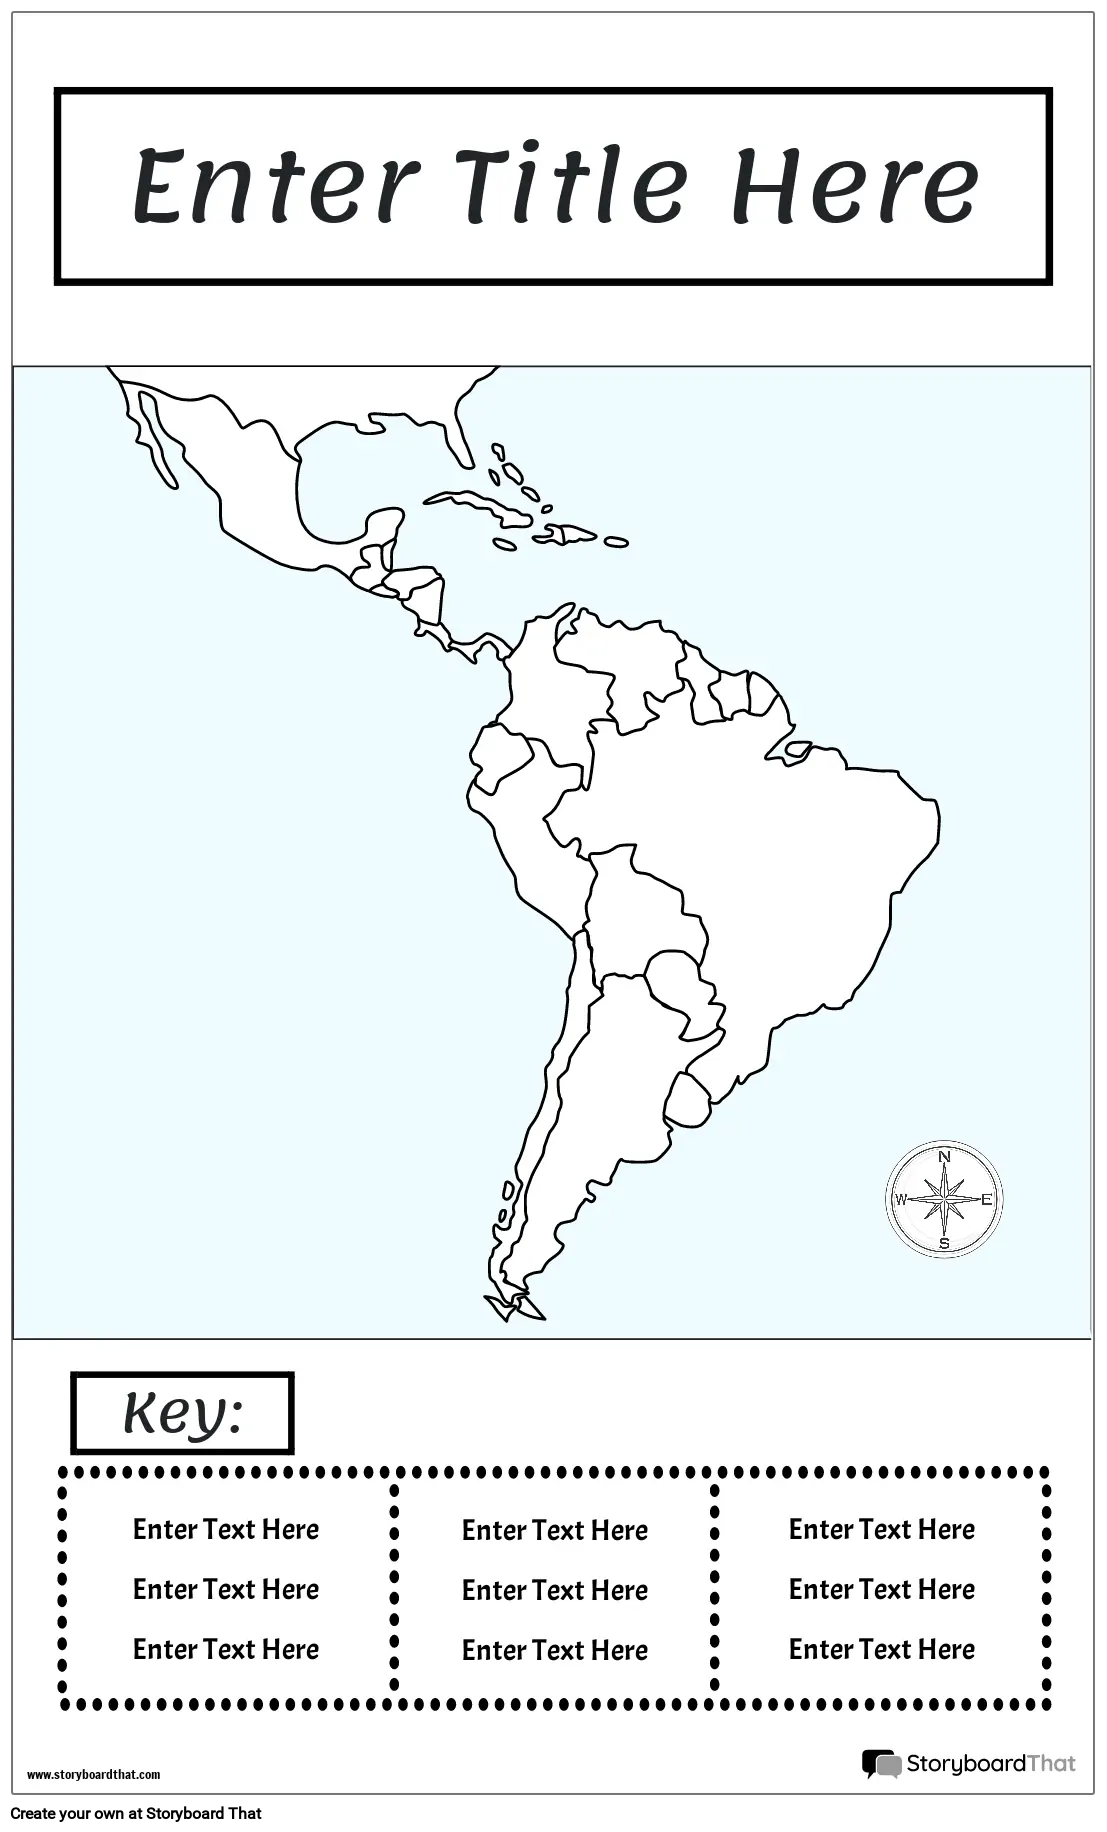 नक्शा पोस्टर 15 बीडब्ल्यू पोर्ट्रेट-मध्य और दक्षिण अमेरिका